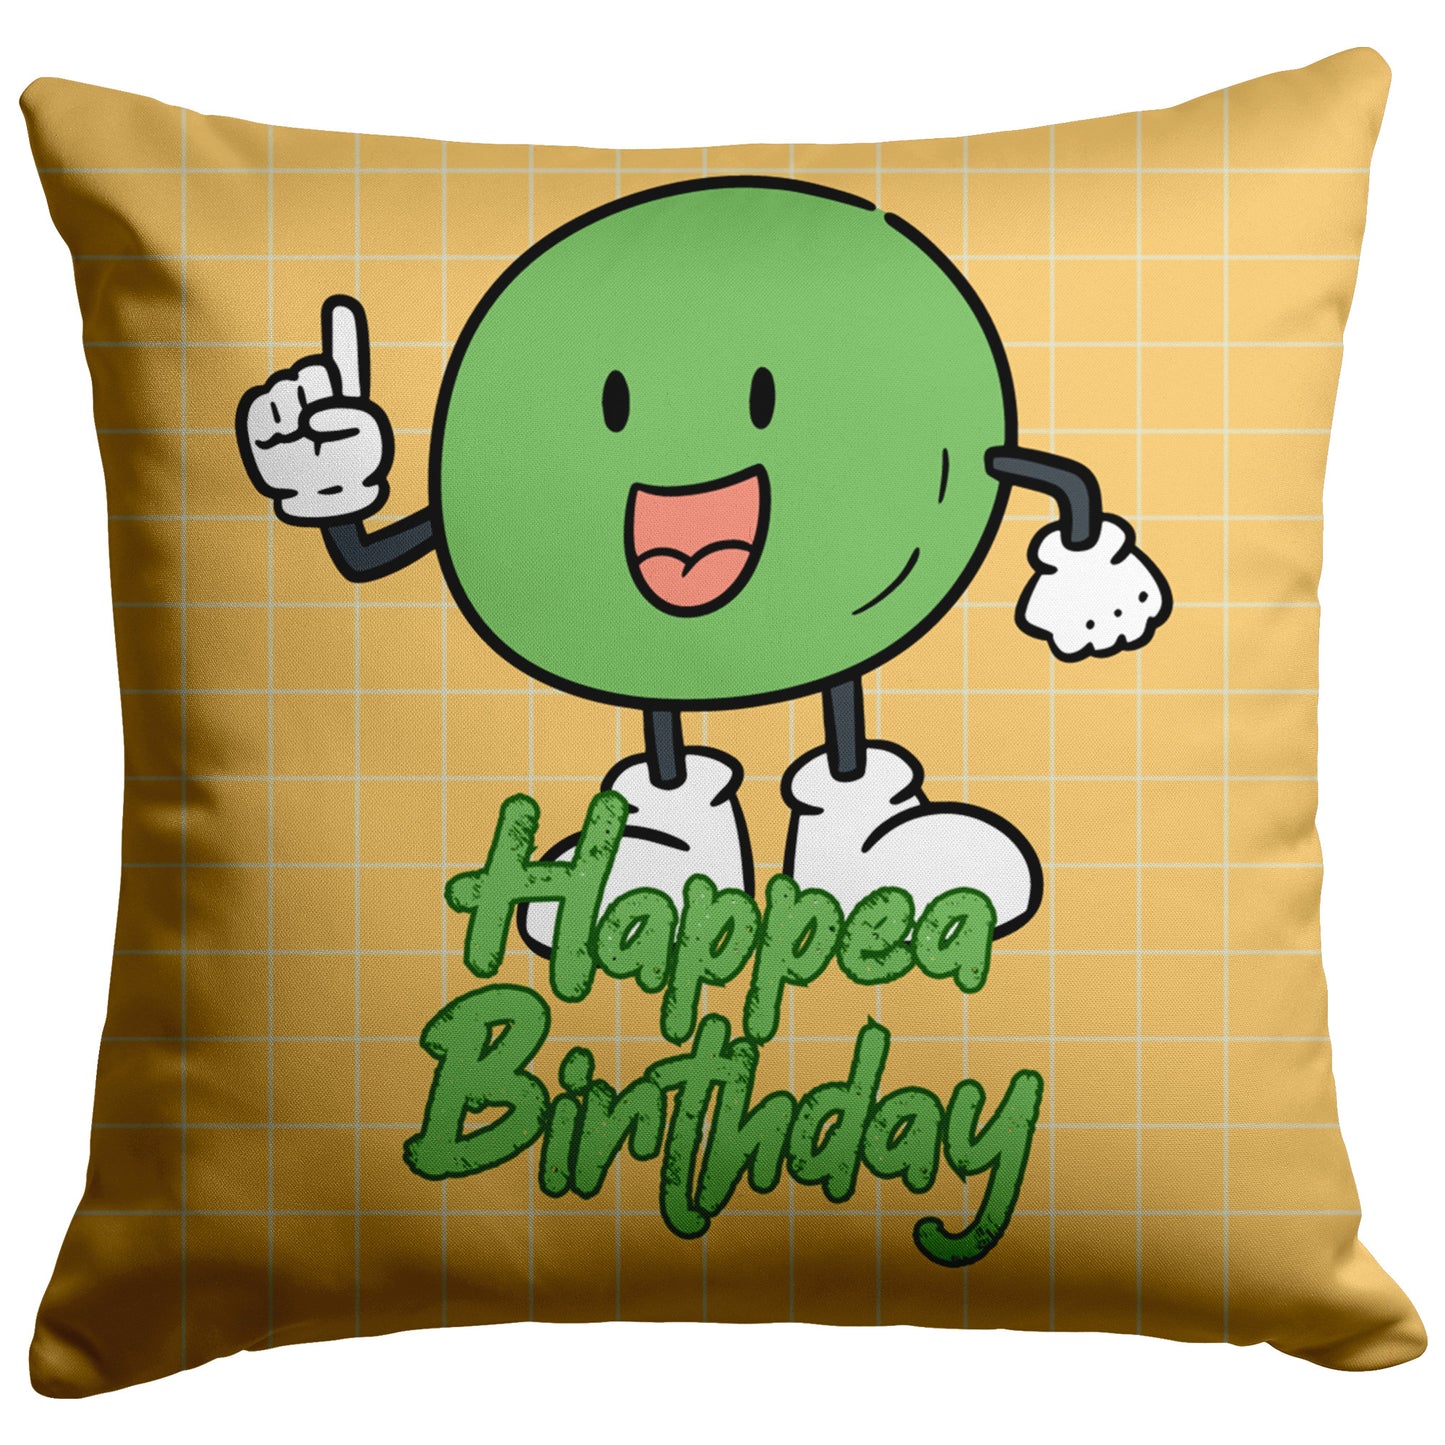 Pillow Happy Birthday Design 12